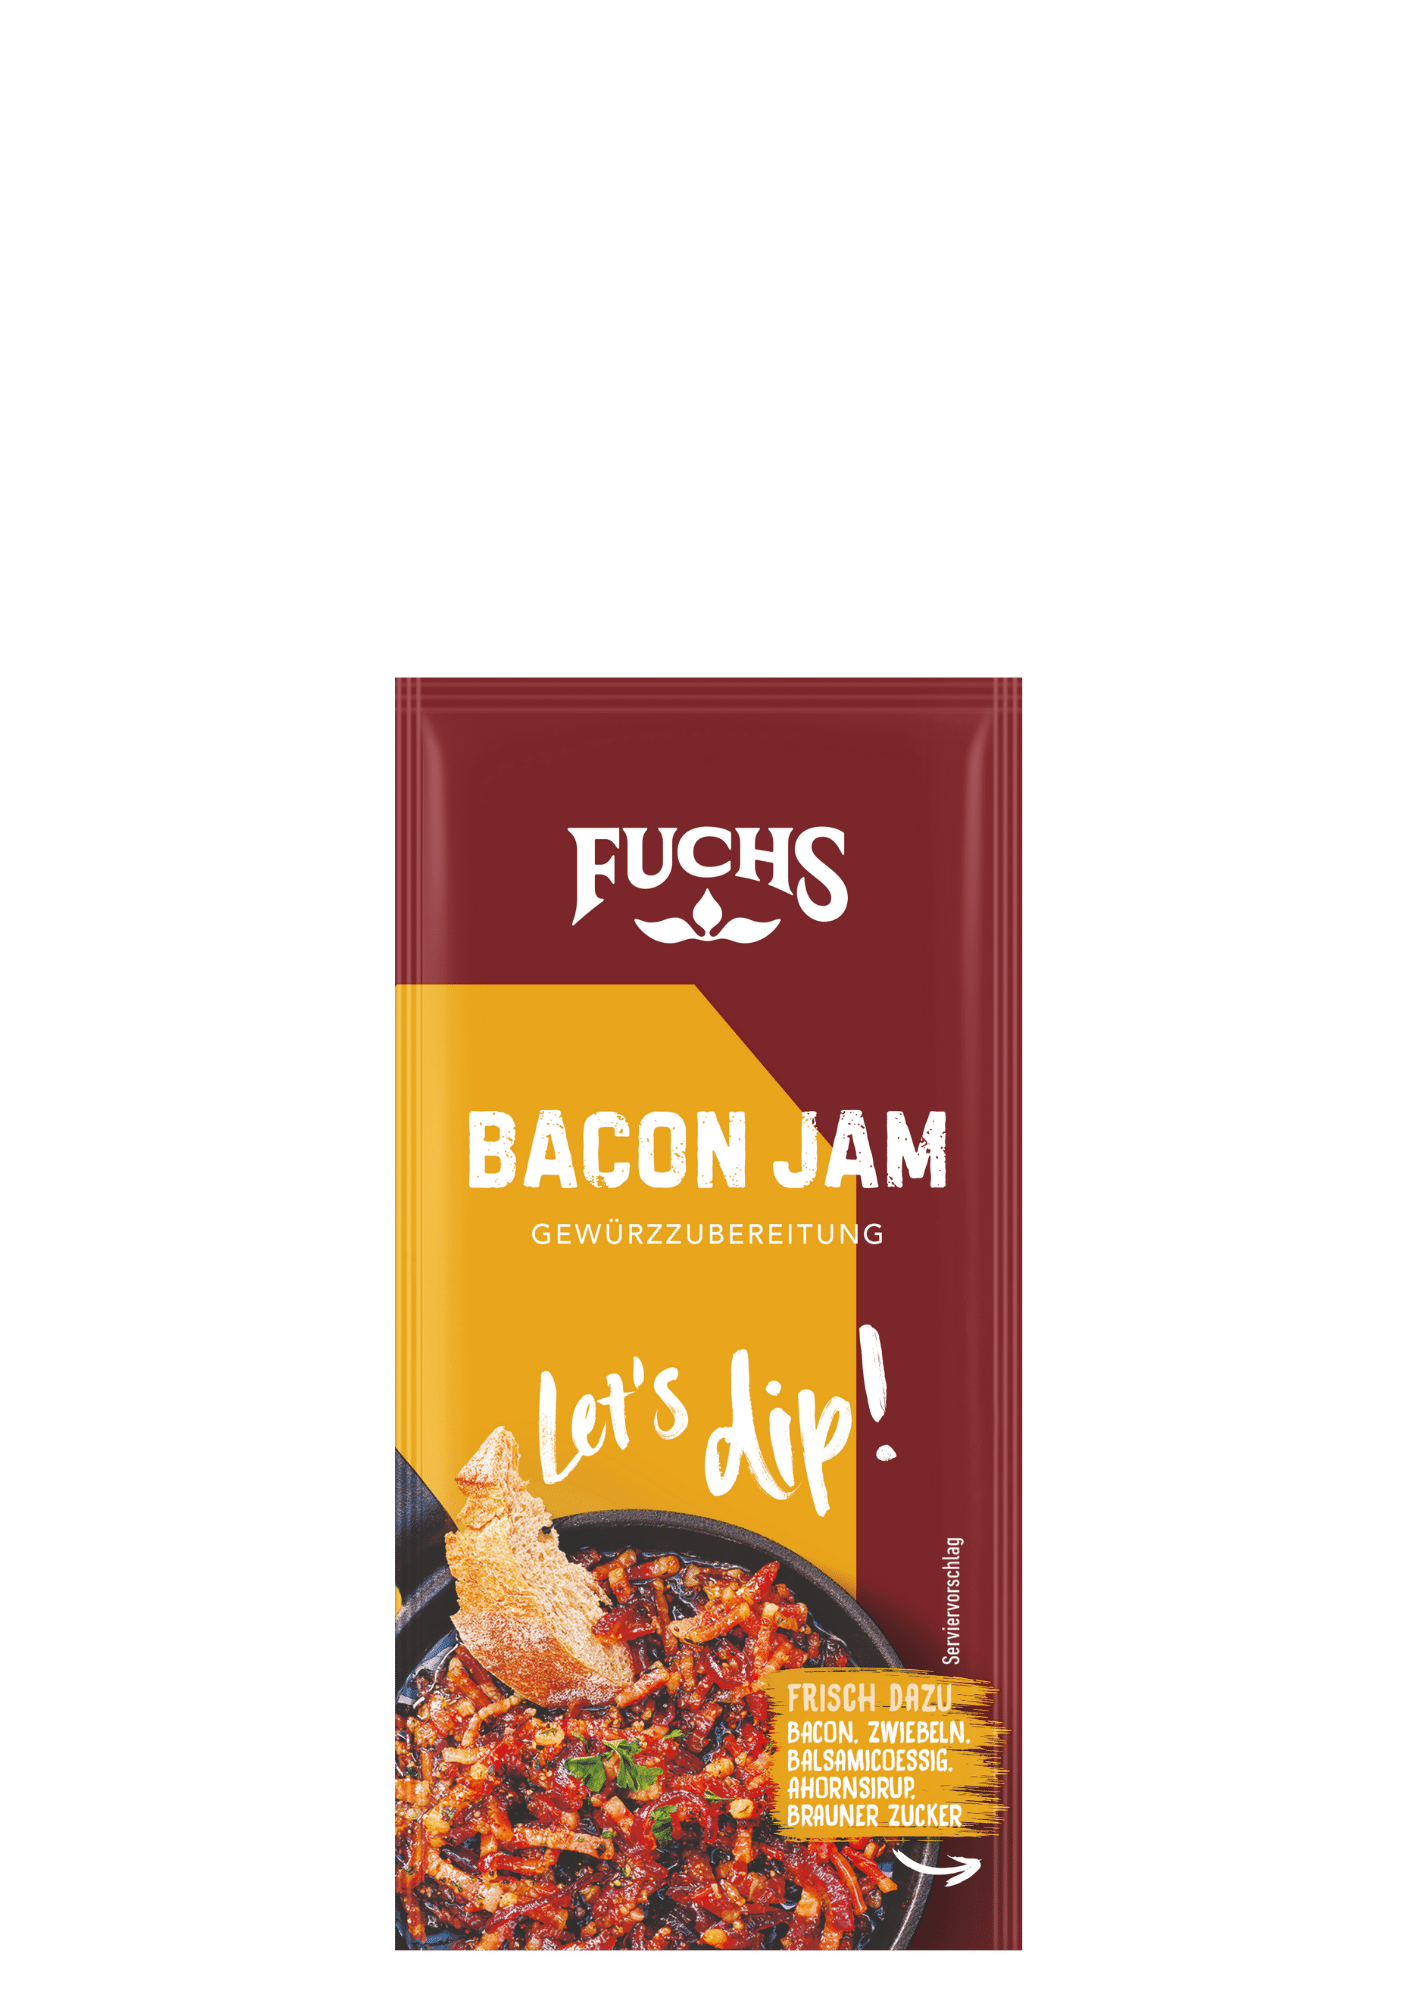 Let's dip! Bacon Jam